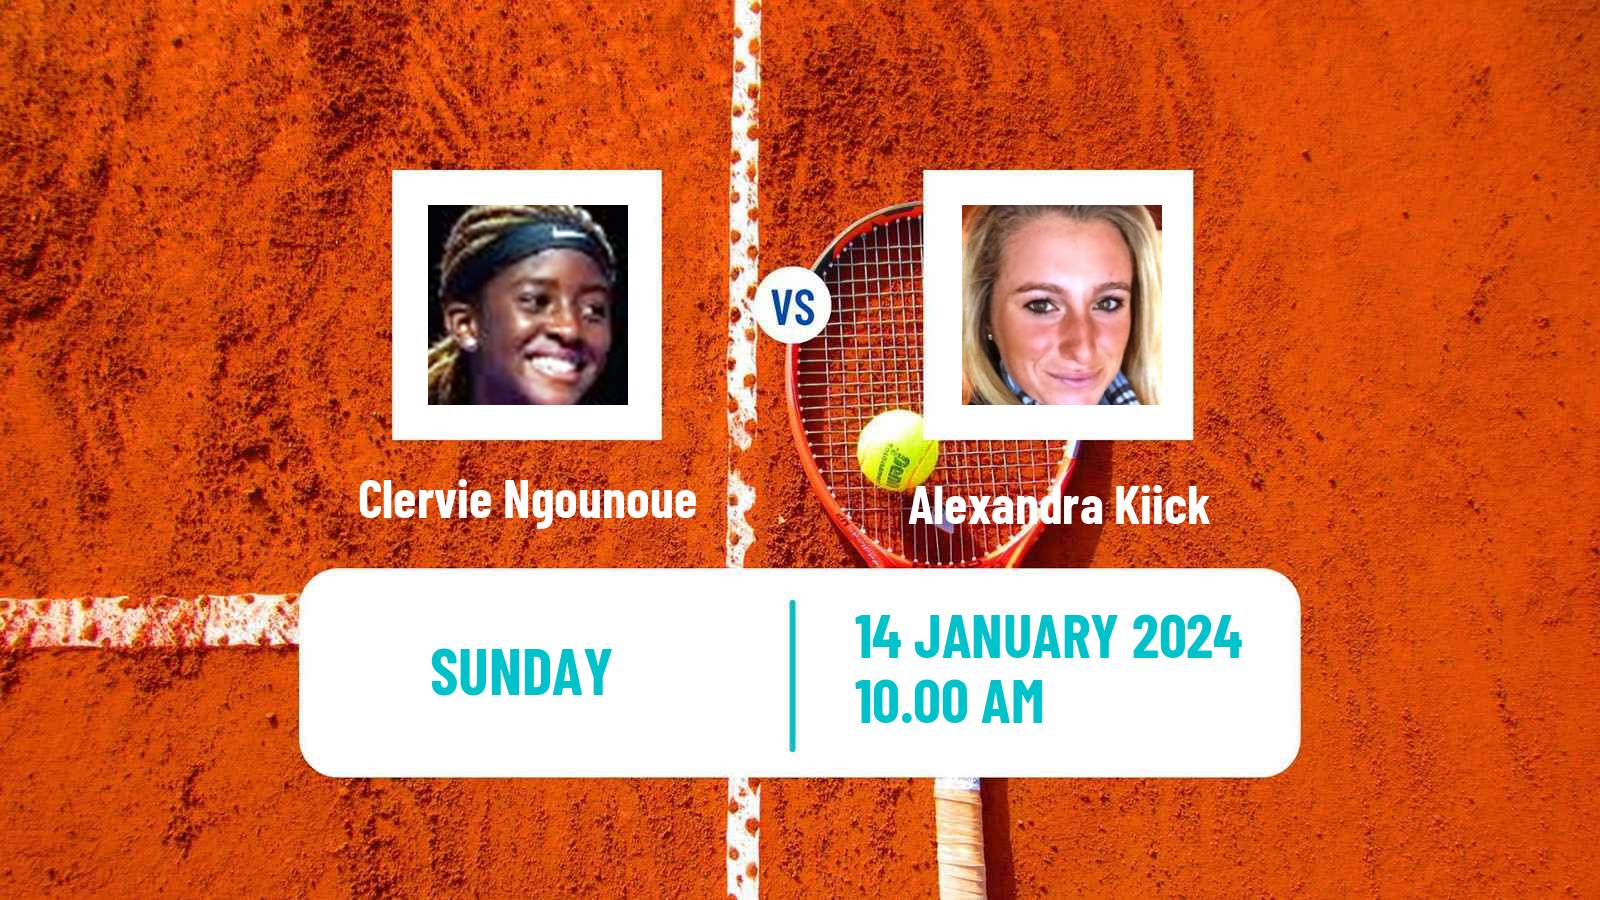 Tennis ITF W35 Naples Fl Women Clervie Ngounoue - Alexandra Kiick